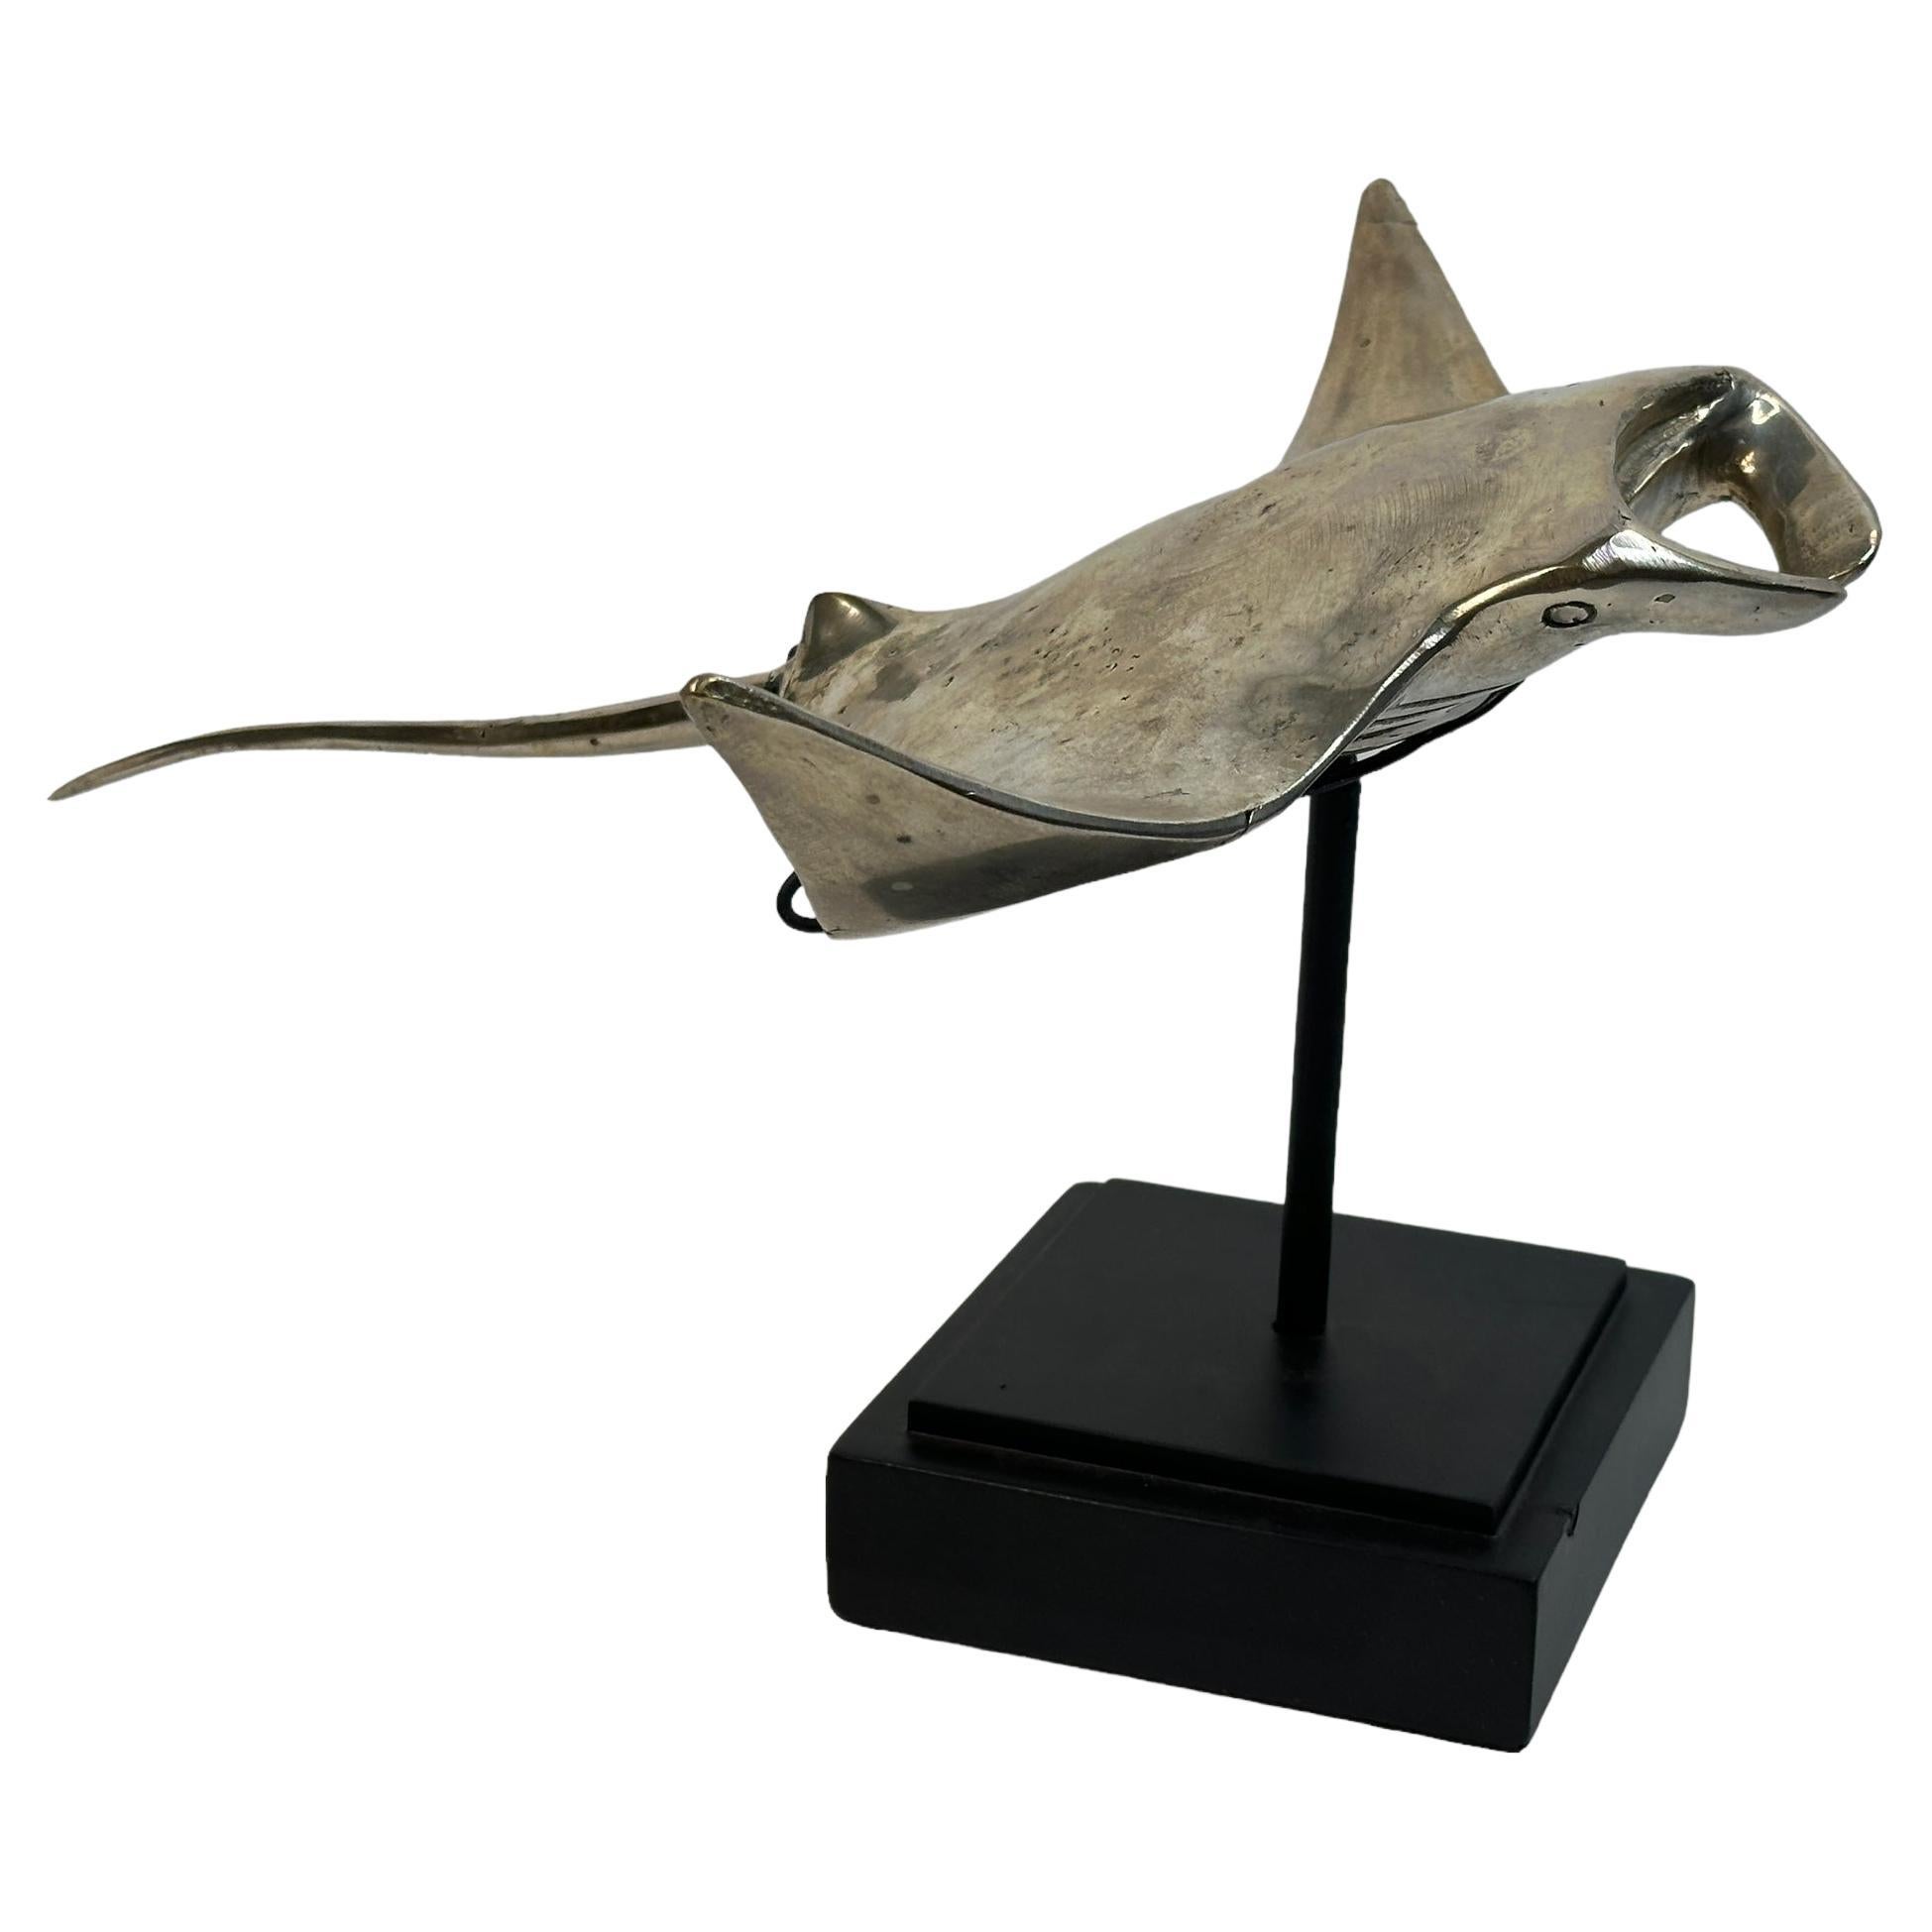 Magnifique sculpture Manta Sting Ray en métal nickelé sur socle, vintage des années 1980